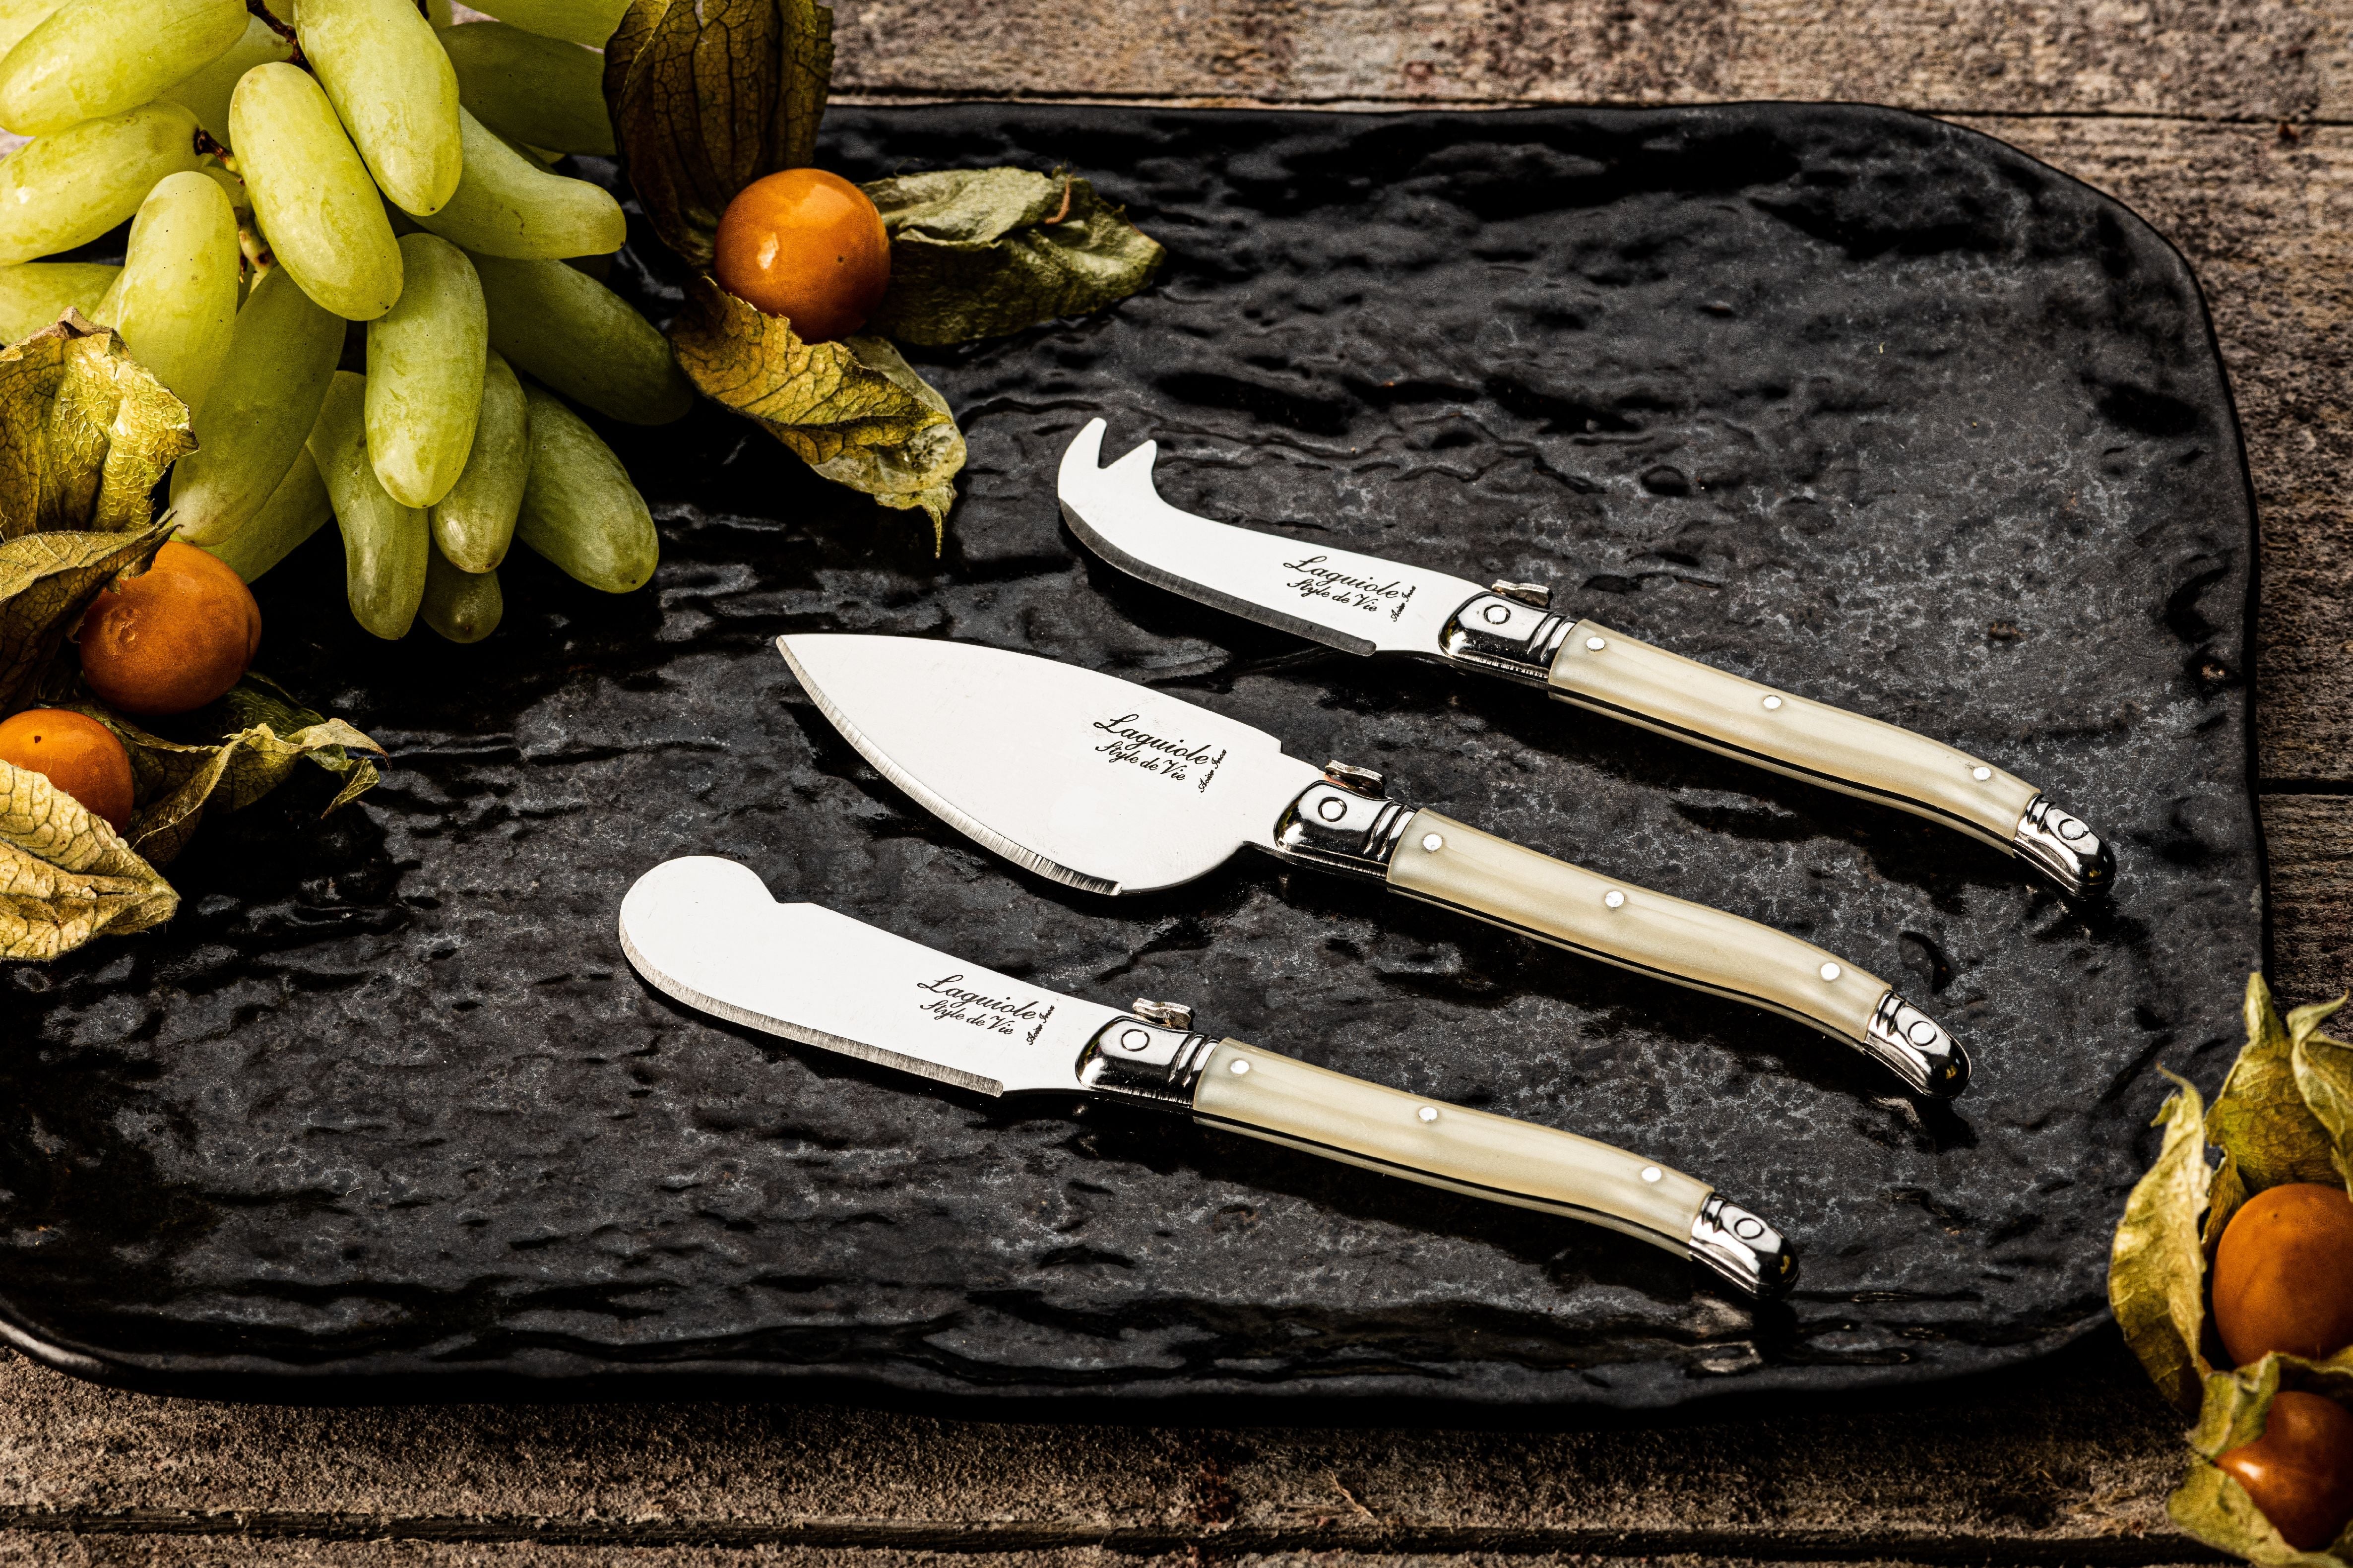 Style De Vie Authentique Laguiole Premium Line Cheese Knives 3 Piece Set, Pearl